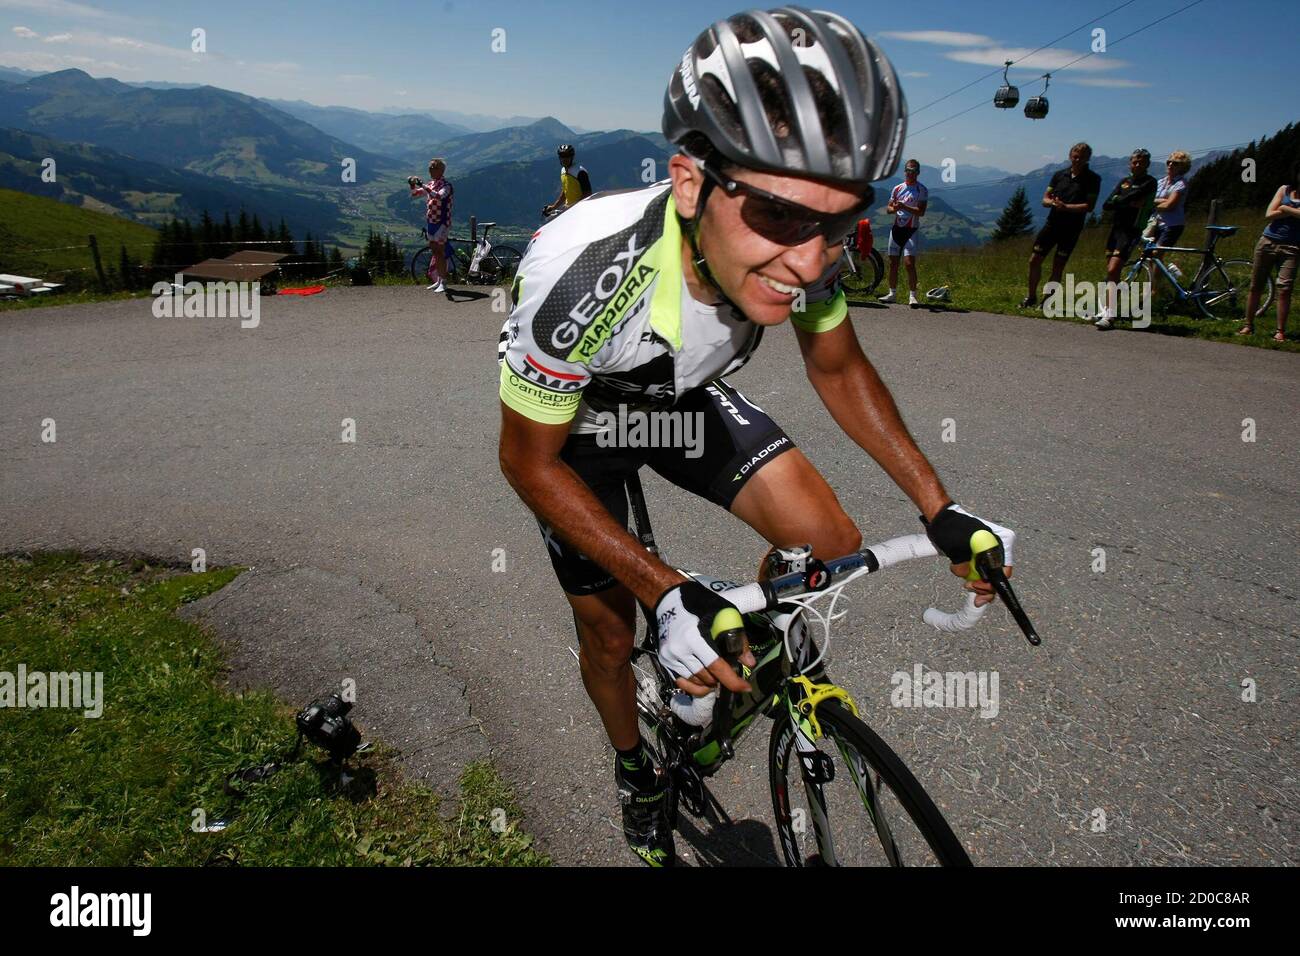 El piloto del equipo Geox Carlos Sastre de España compite durante la etapa de la 63ª gira ciclista austriaca en Kitzbuehel 4 de julio de 2011. Ebenbichler (AUSTRIA - Tags: